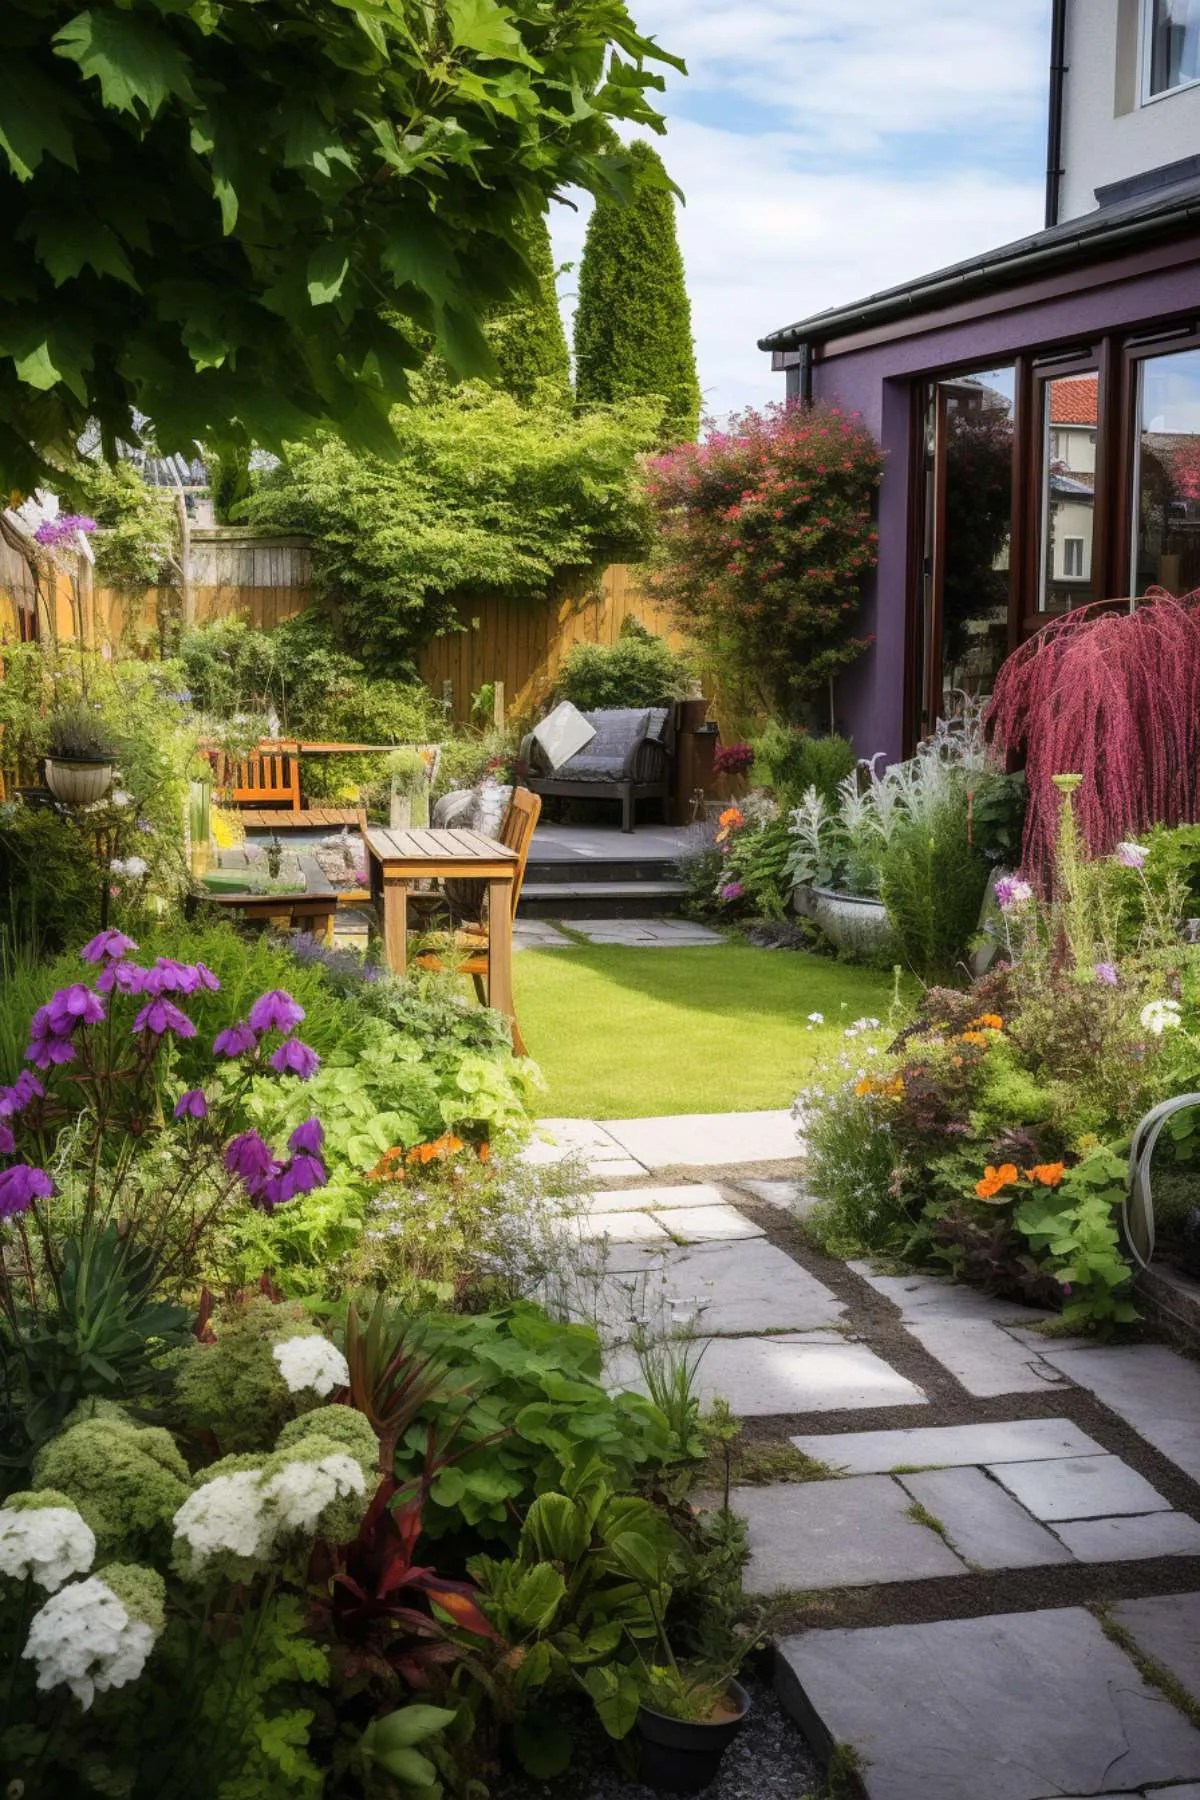 Hire a Landscape Designer – Transform Your Outdoor Space